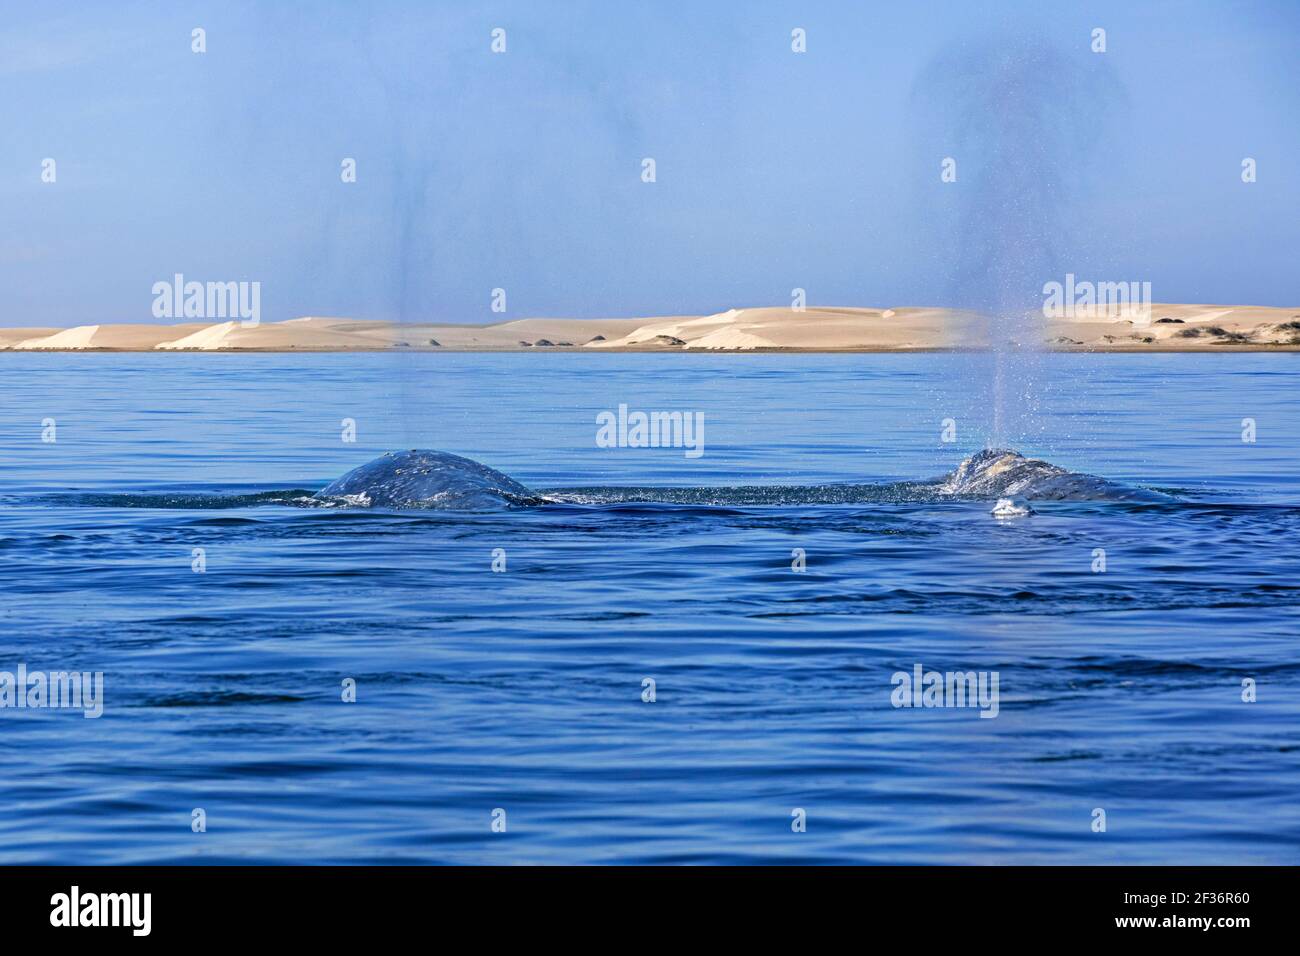 Dos ballenas grises del Pacífico / ballena gris de California (Eschrichtius robustus) frente a Puerto Adolfo López Mateos, Baja California Sur, México Foto de stock